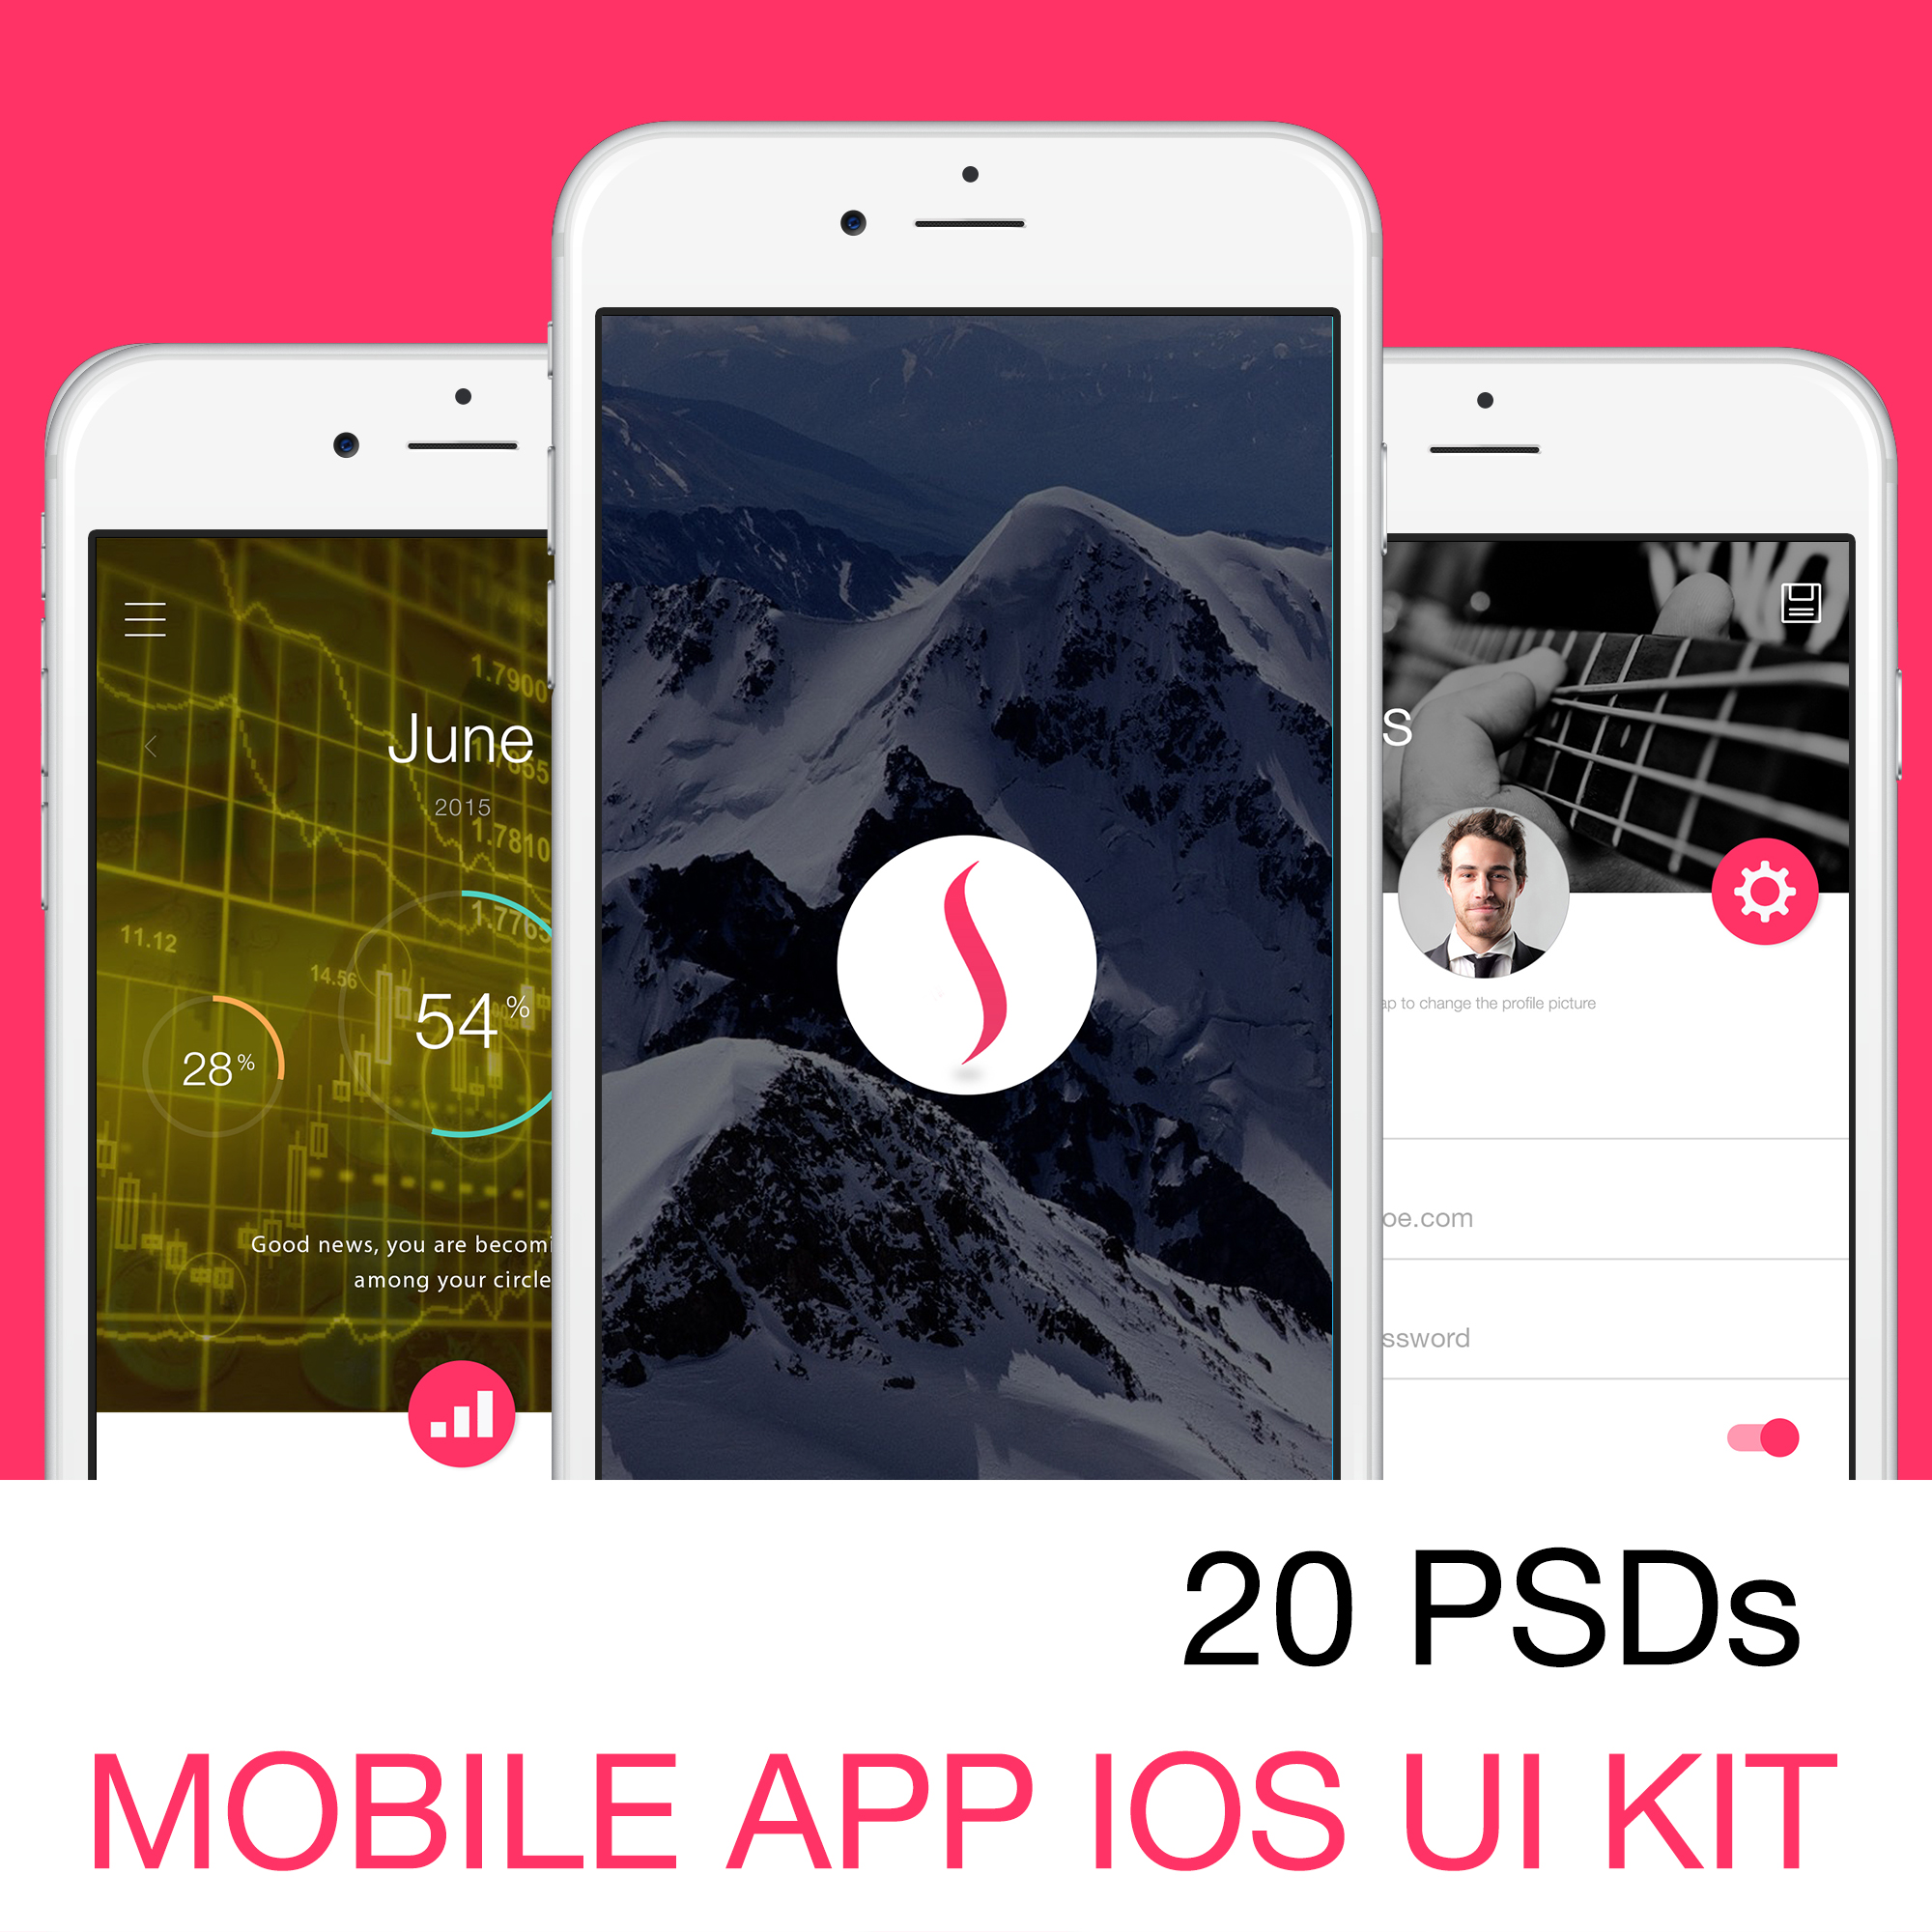 iOS UI Kit